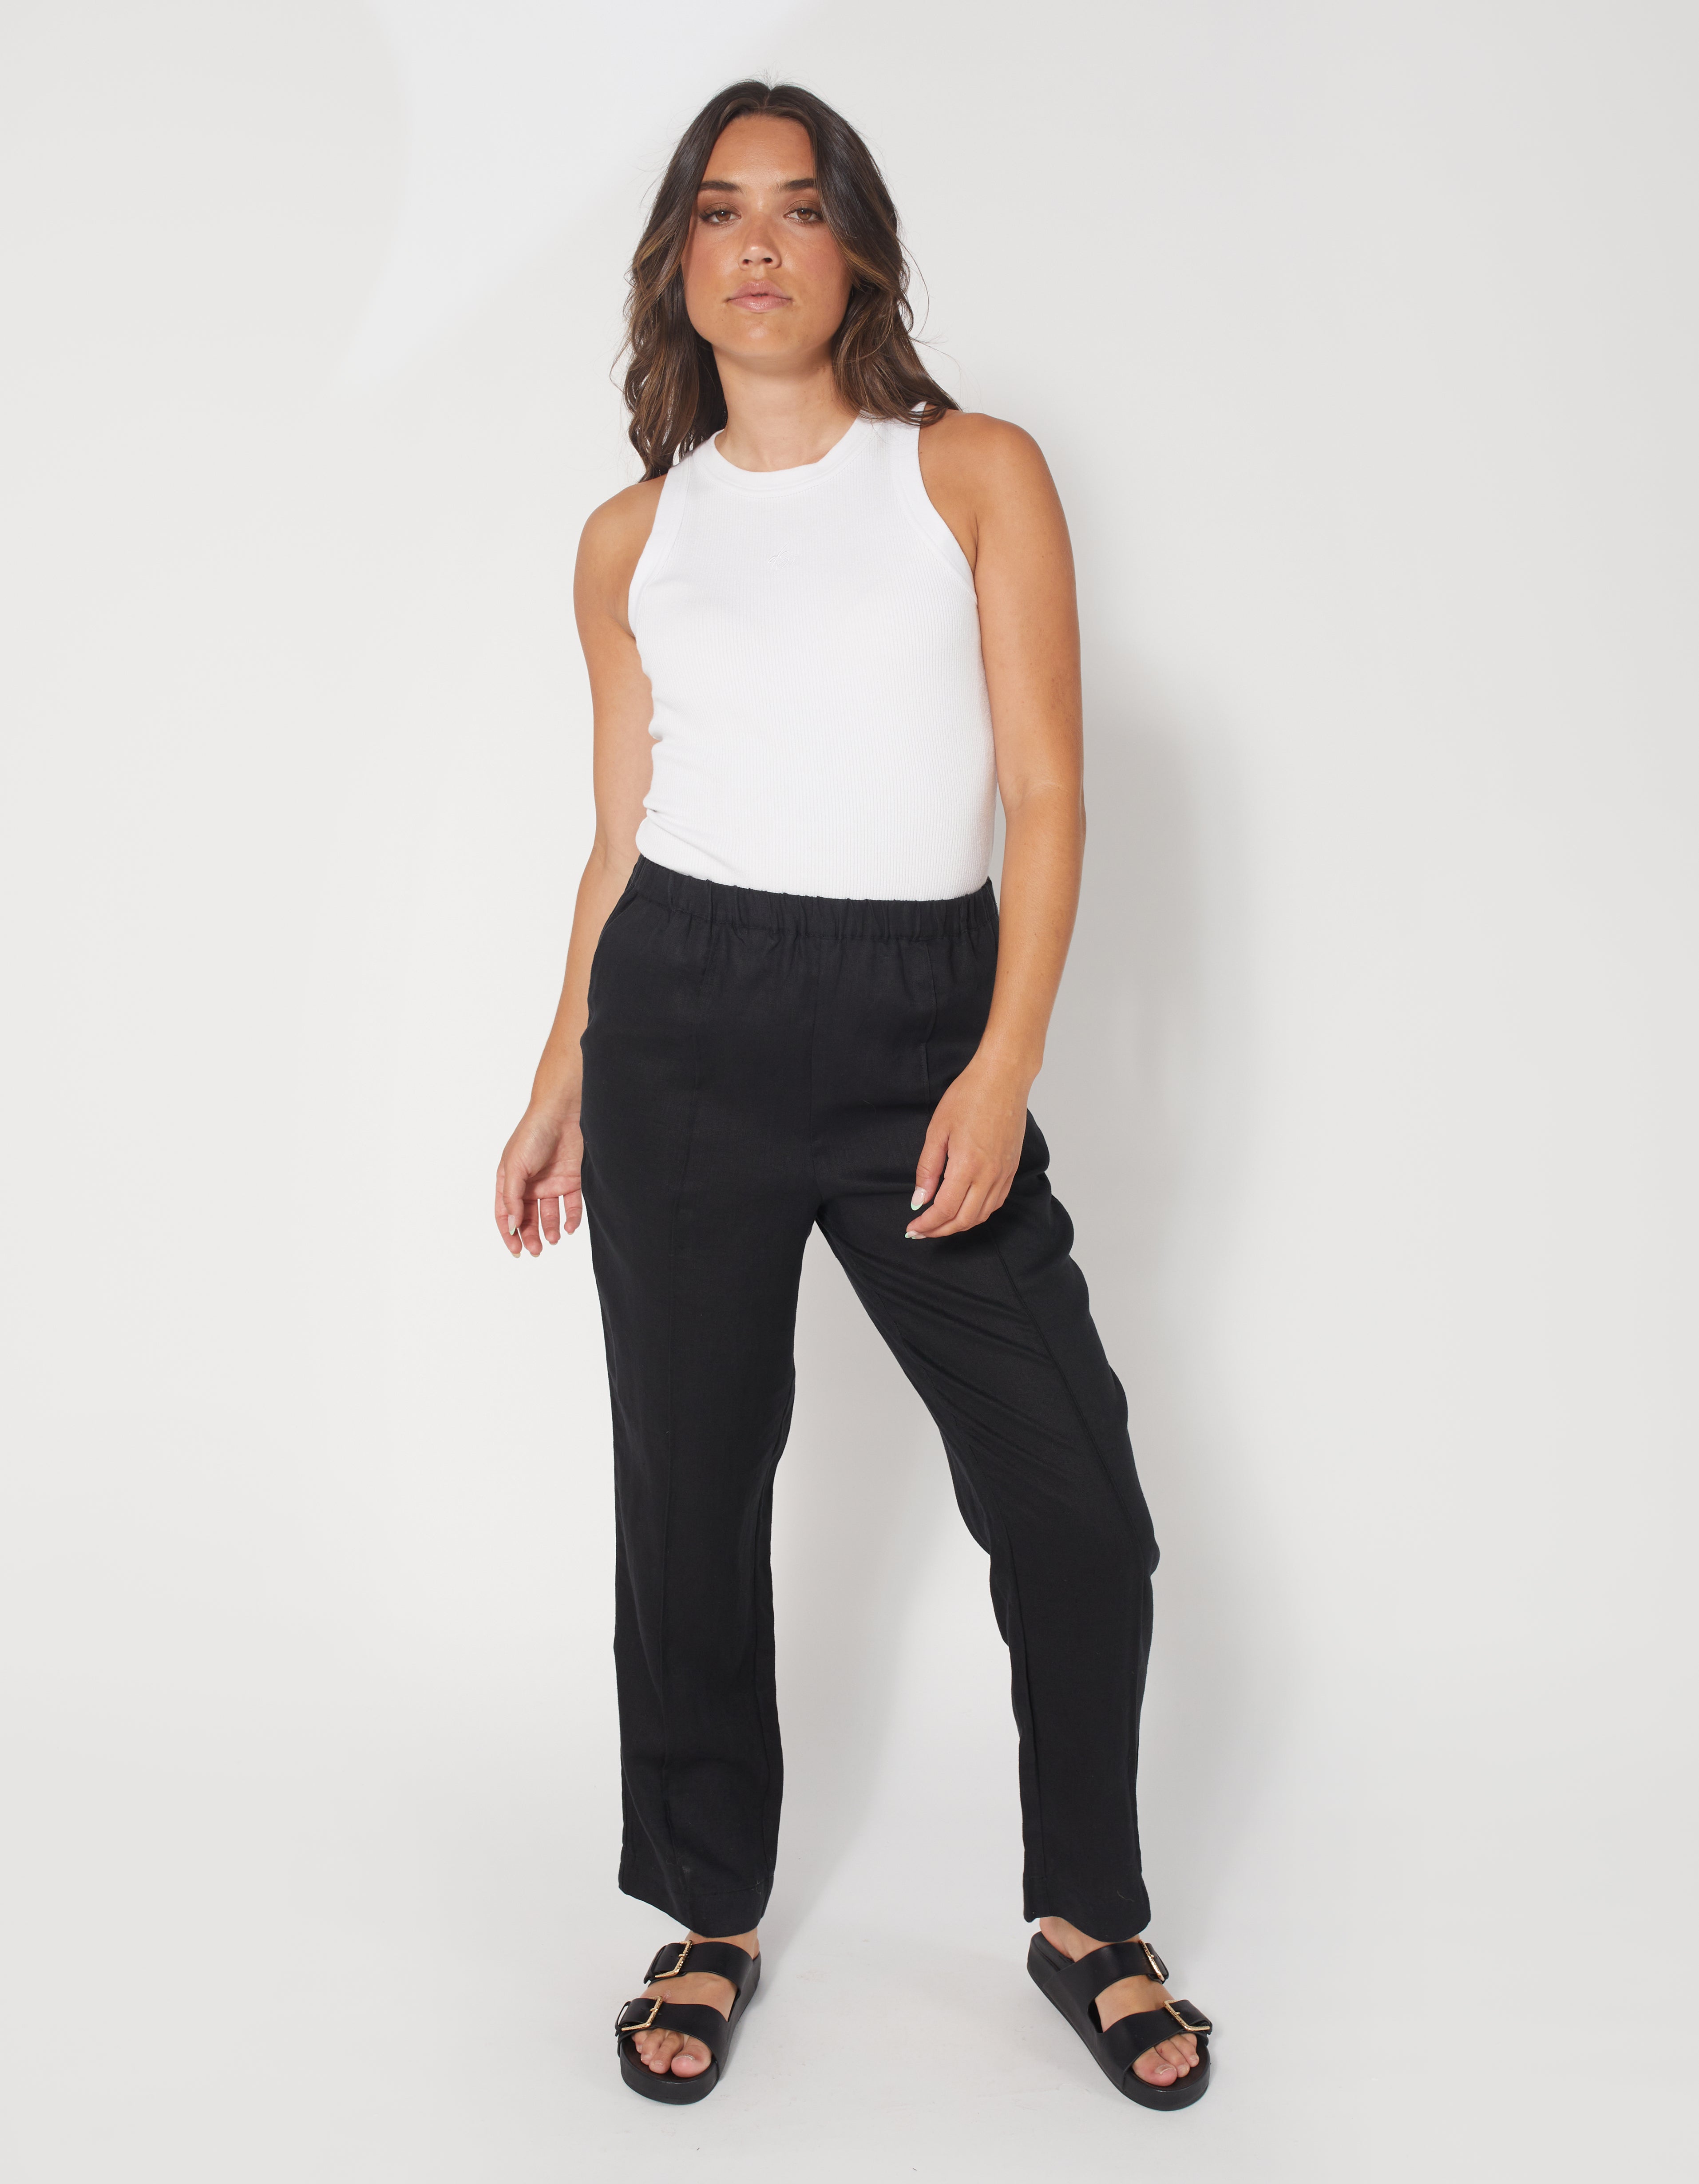 Shop the latest on-trend Woman's Pants | dear Sutton, – Dear Sutton